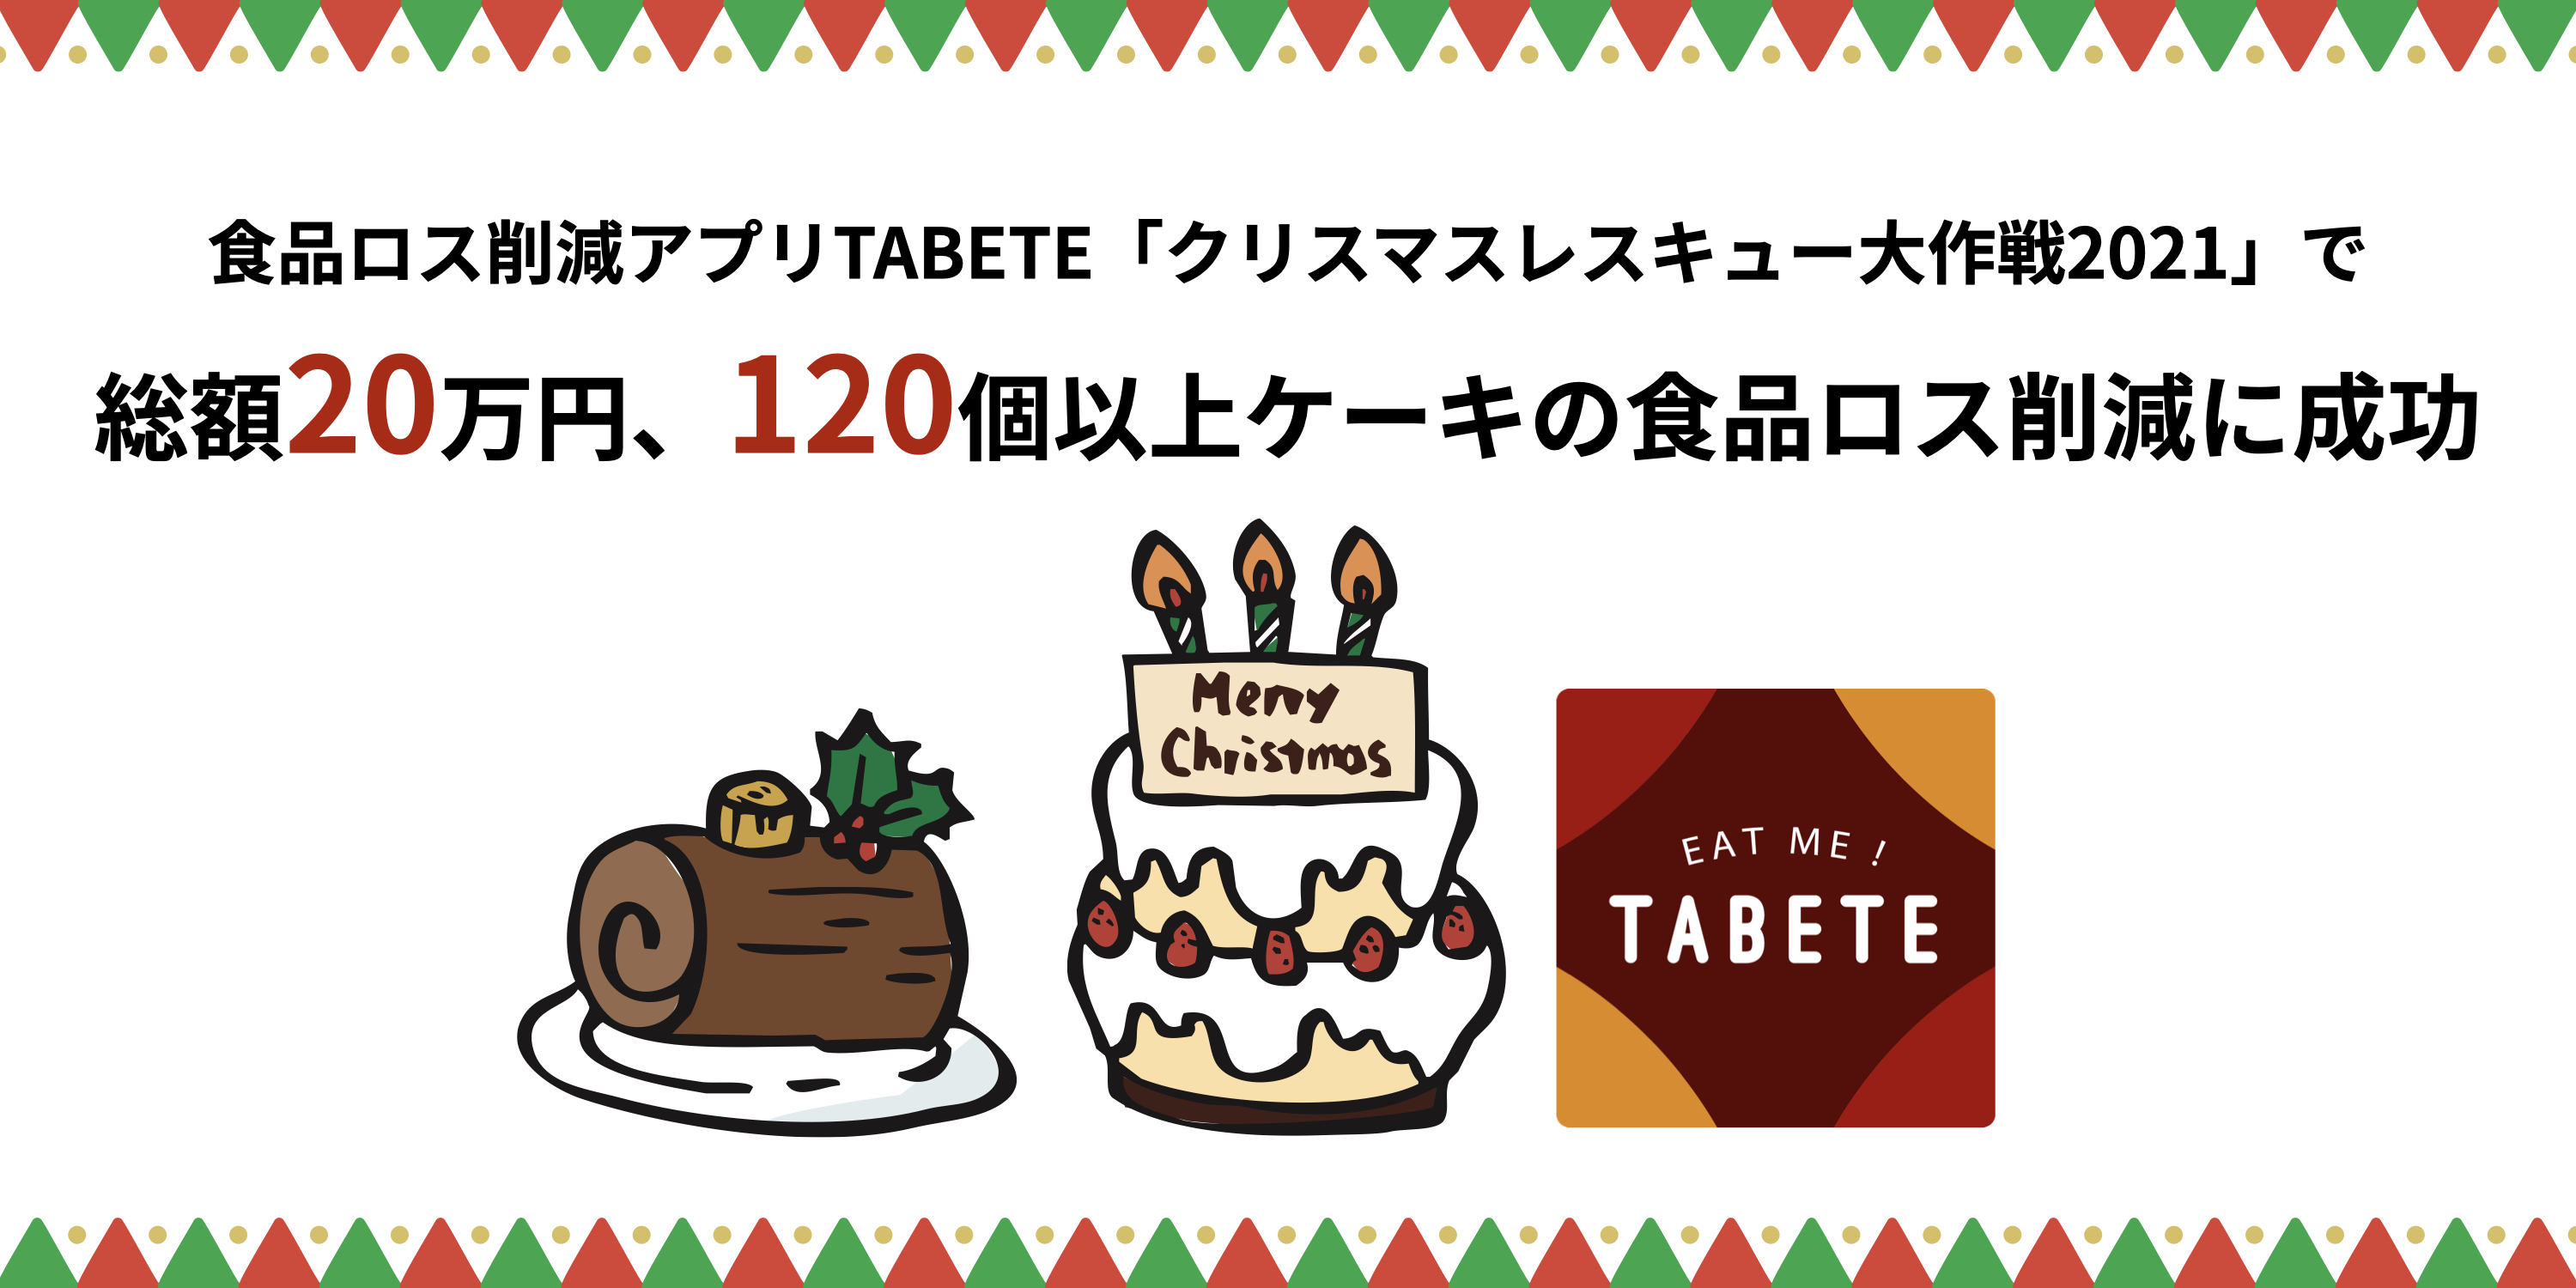 クリスマス後に発生したケーキ等の食品ロス、TABETEで削減に成功。25日 ...